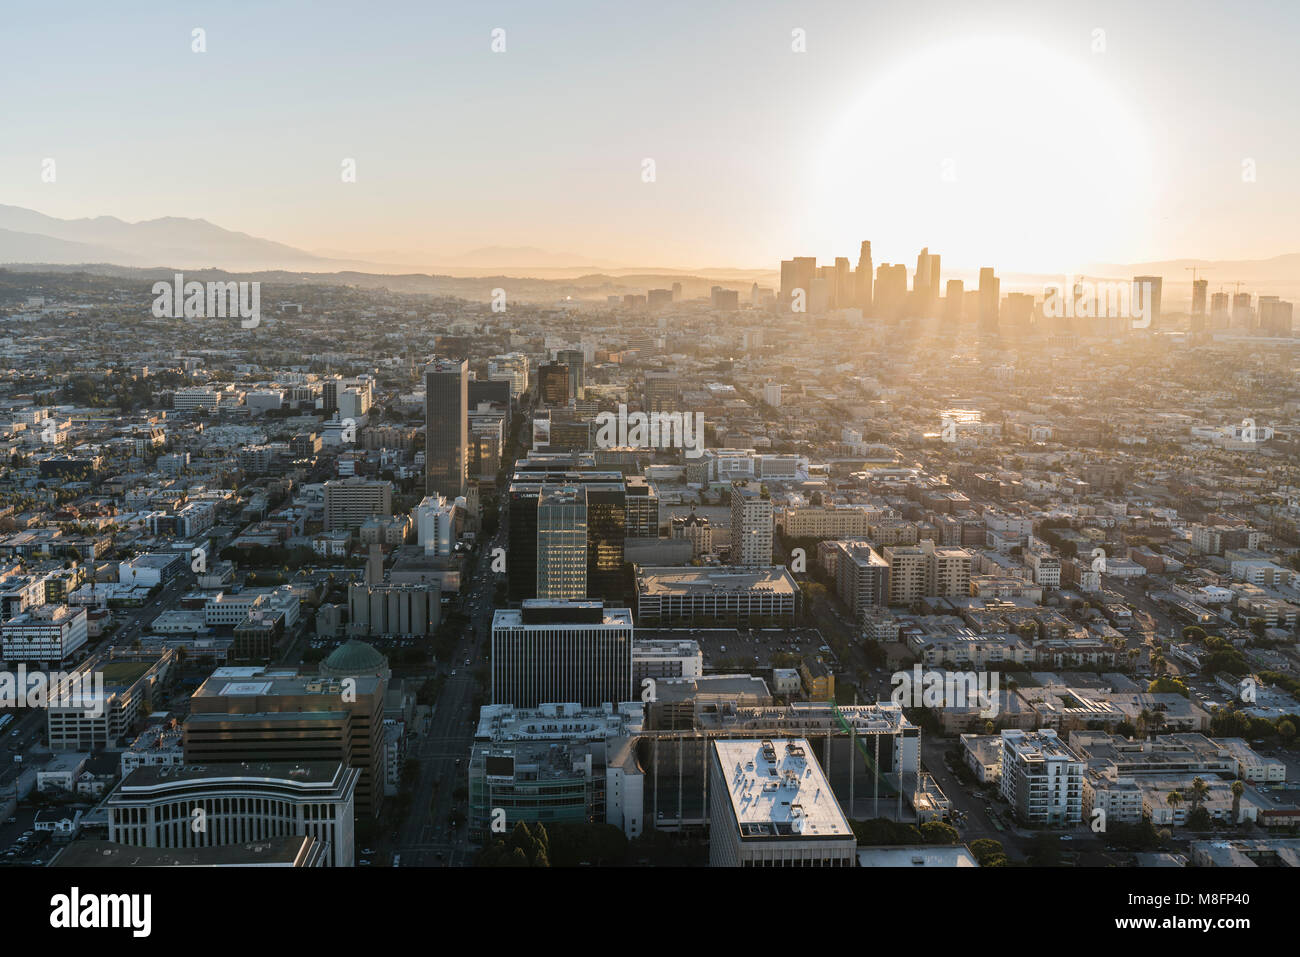 Los Angeles, California, Stati Uniti d'America - 20 Febbraio 2018: la mattina presto vista aerea delle torri, le strade e gli edifici lungo il Wilshire Bl e il centro cittadino di Los Angeles. Foto Stock